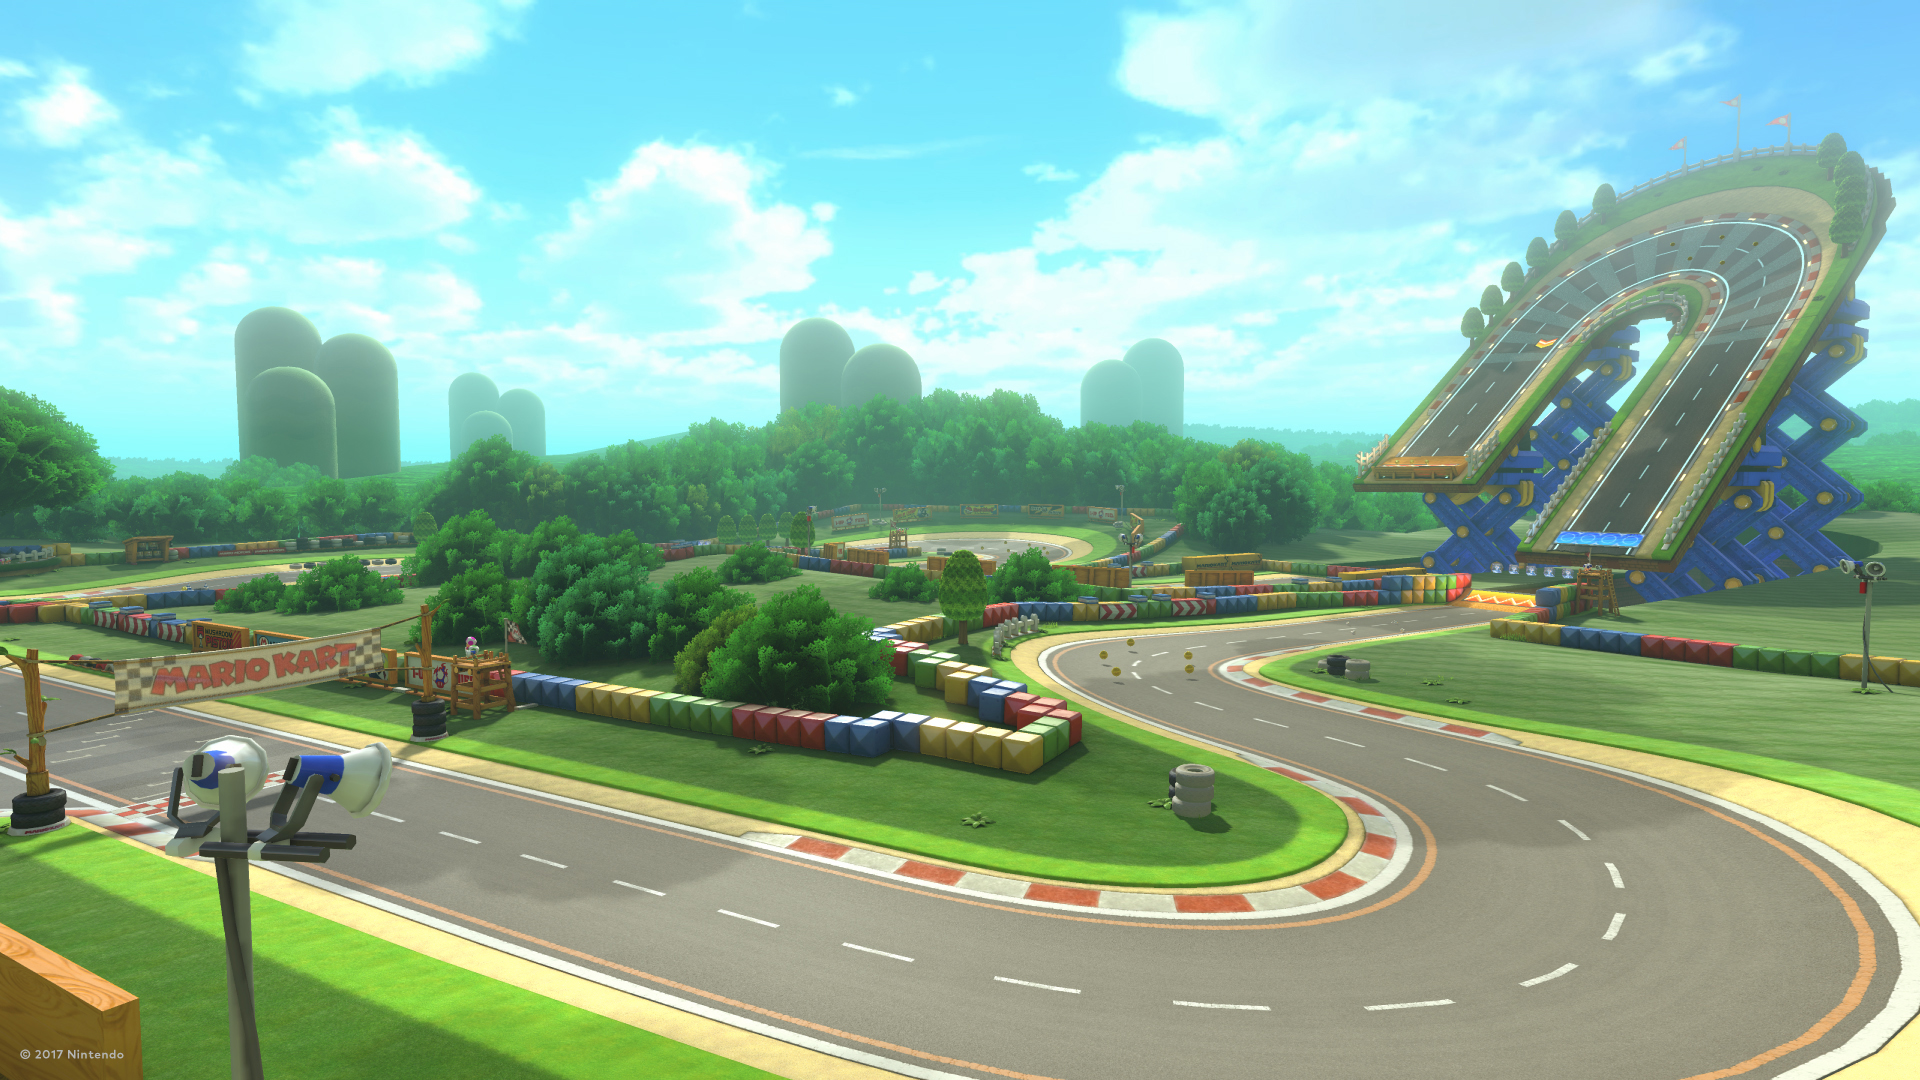 Mario Kart - Computer generated racetrack